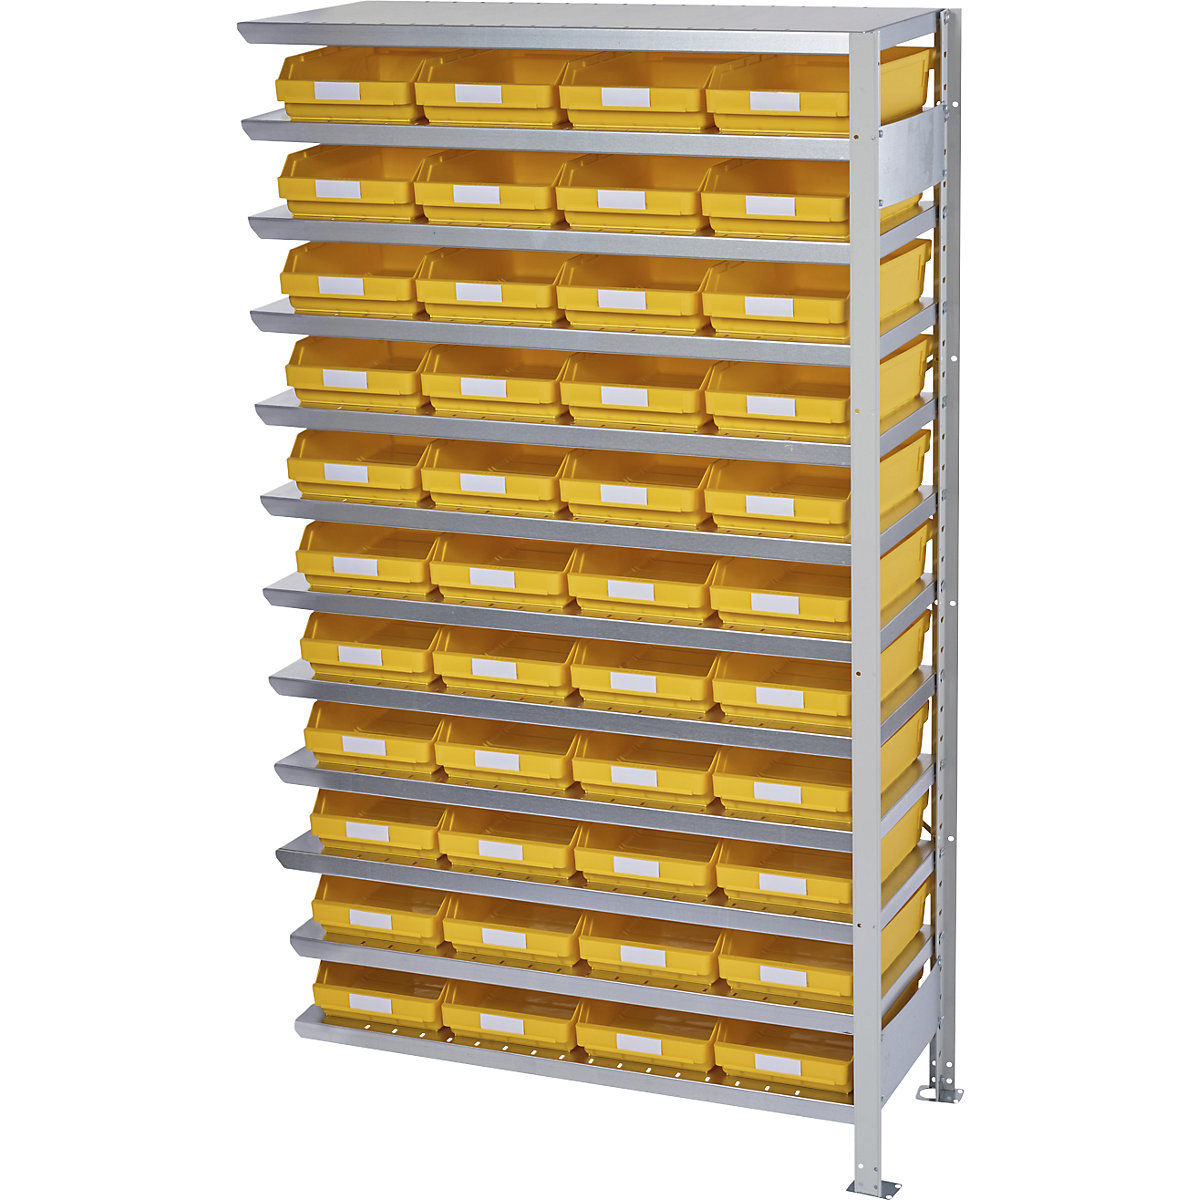 Összedugaszolós állvány dobozokkal – STEMO, állványmagasság 1790 mm, bővítő állvány, 300 mm mély, 44 sárga doboz-38